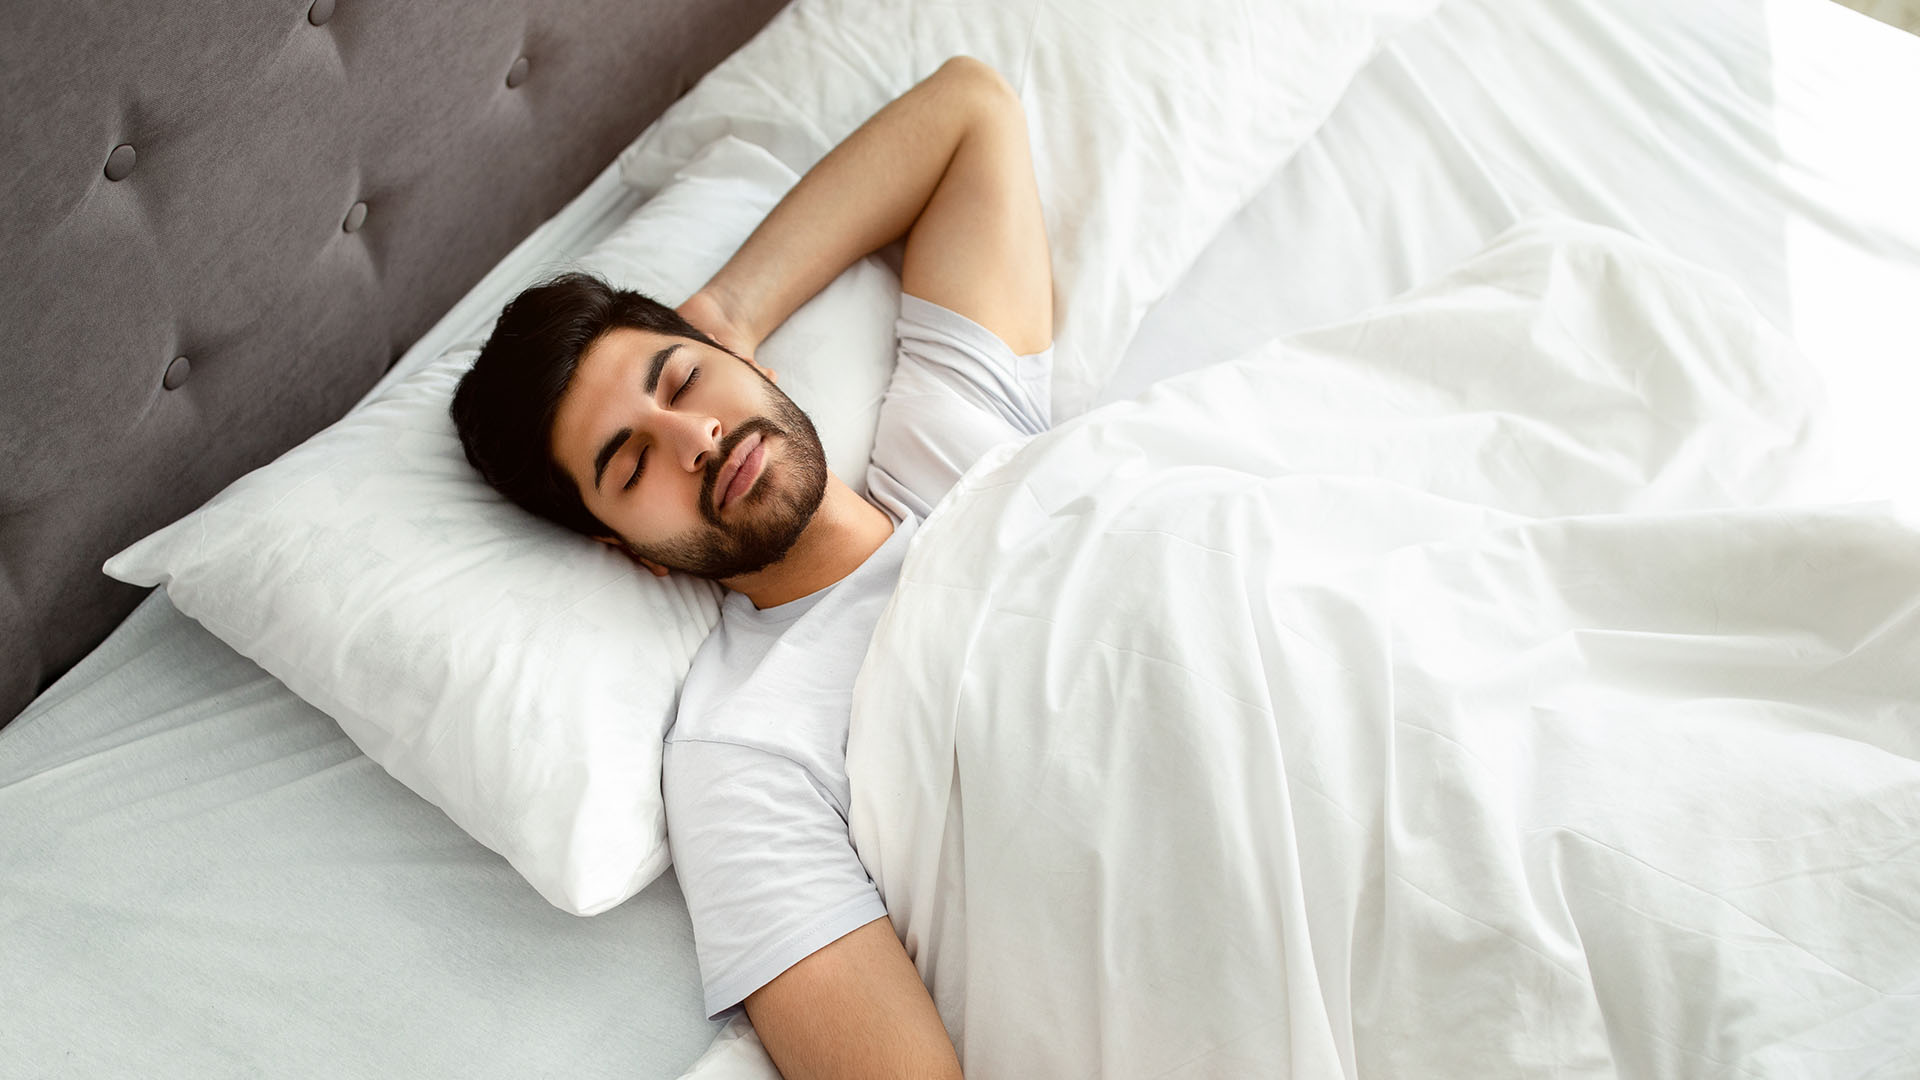 גבר שוכב על גבו במיטה, ישן בשמחה בתנוחה נוחה